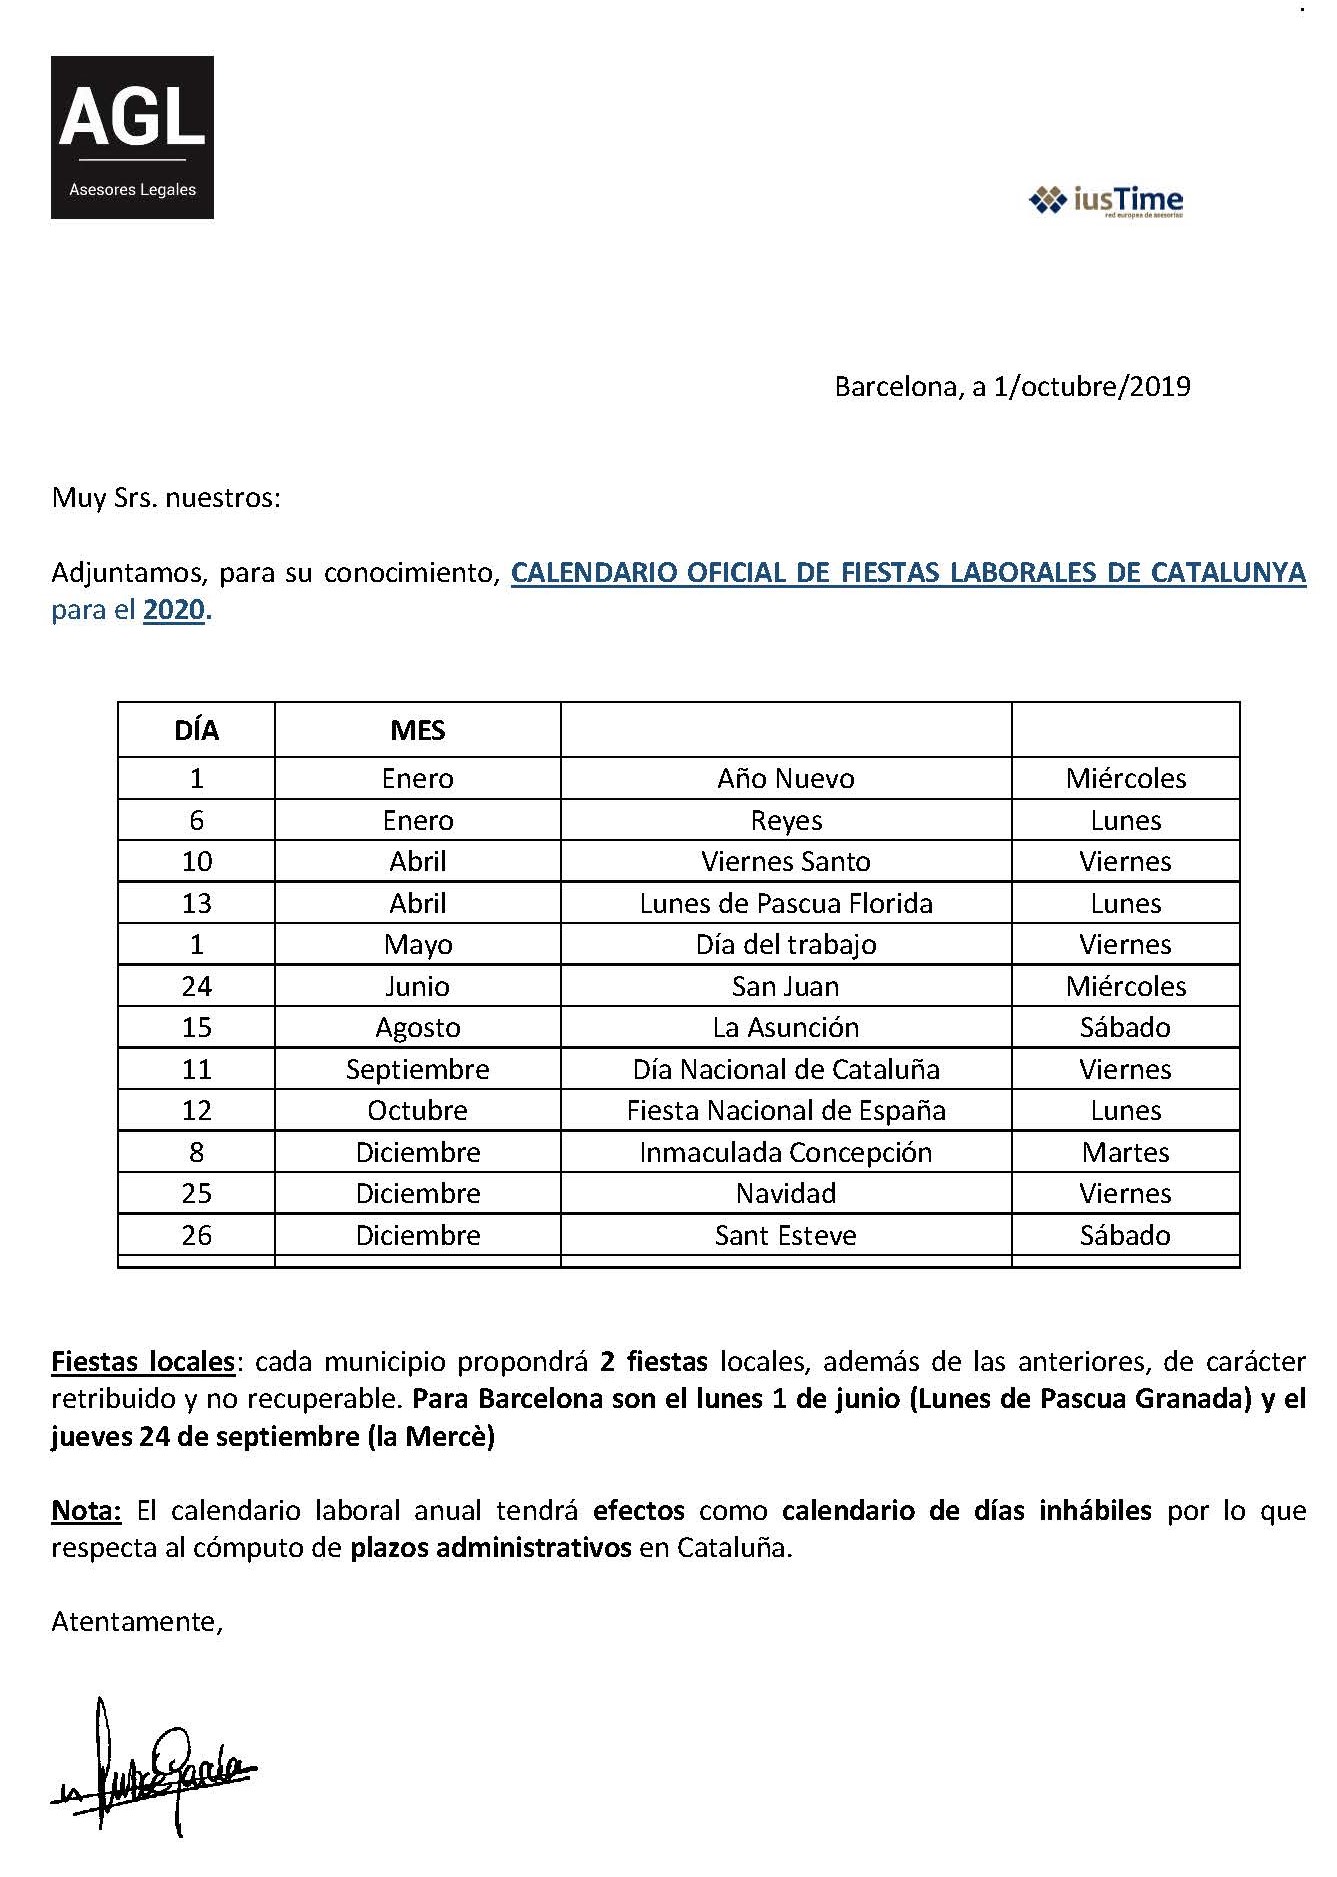 CALENDARIO OFICIAL DE FIESTAS LABORALES DE CATALUÑA PARA 2020